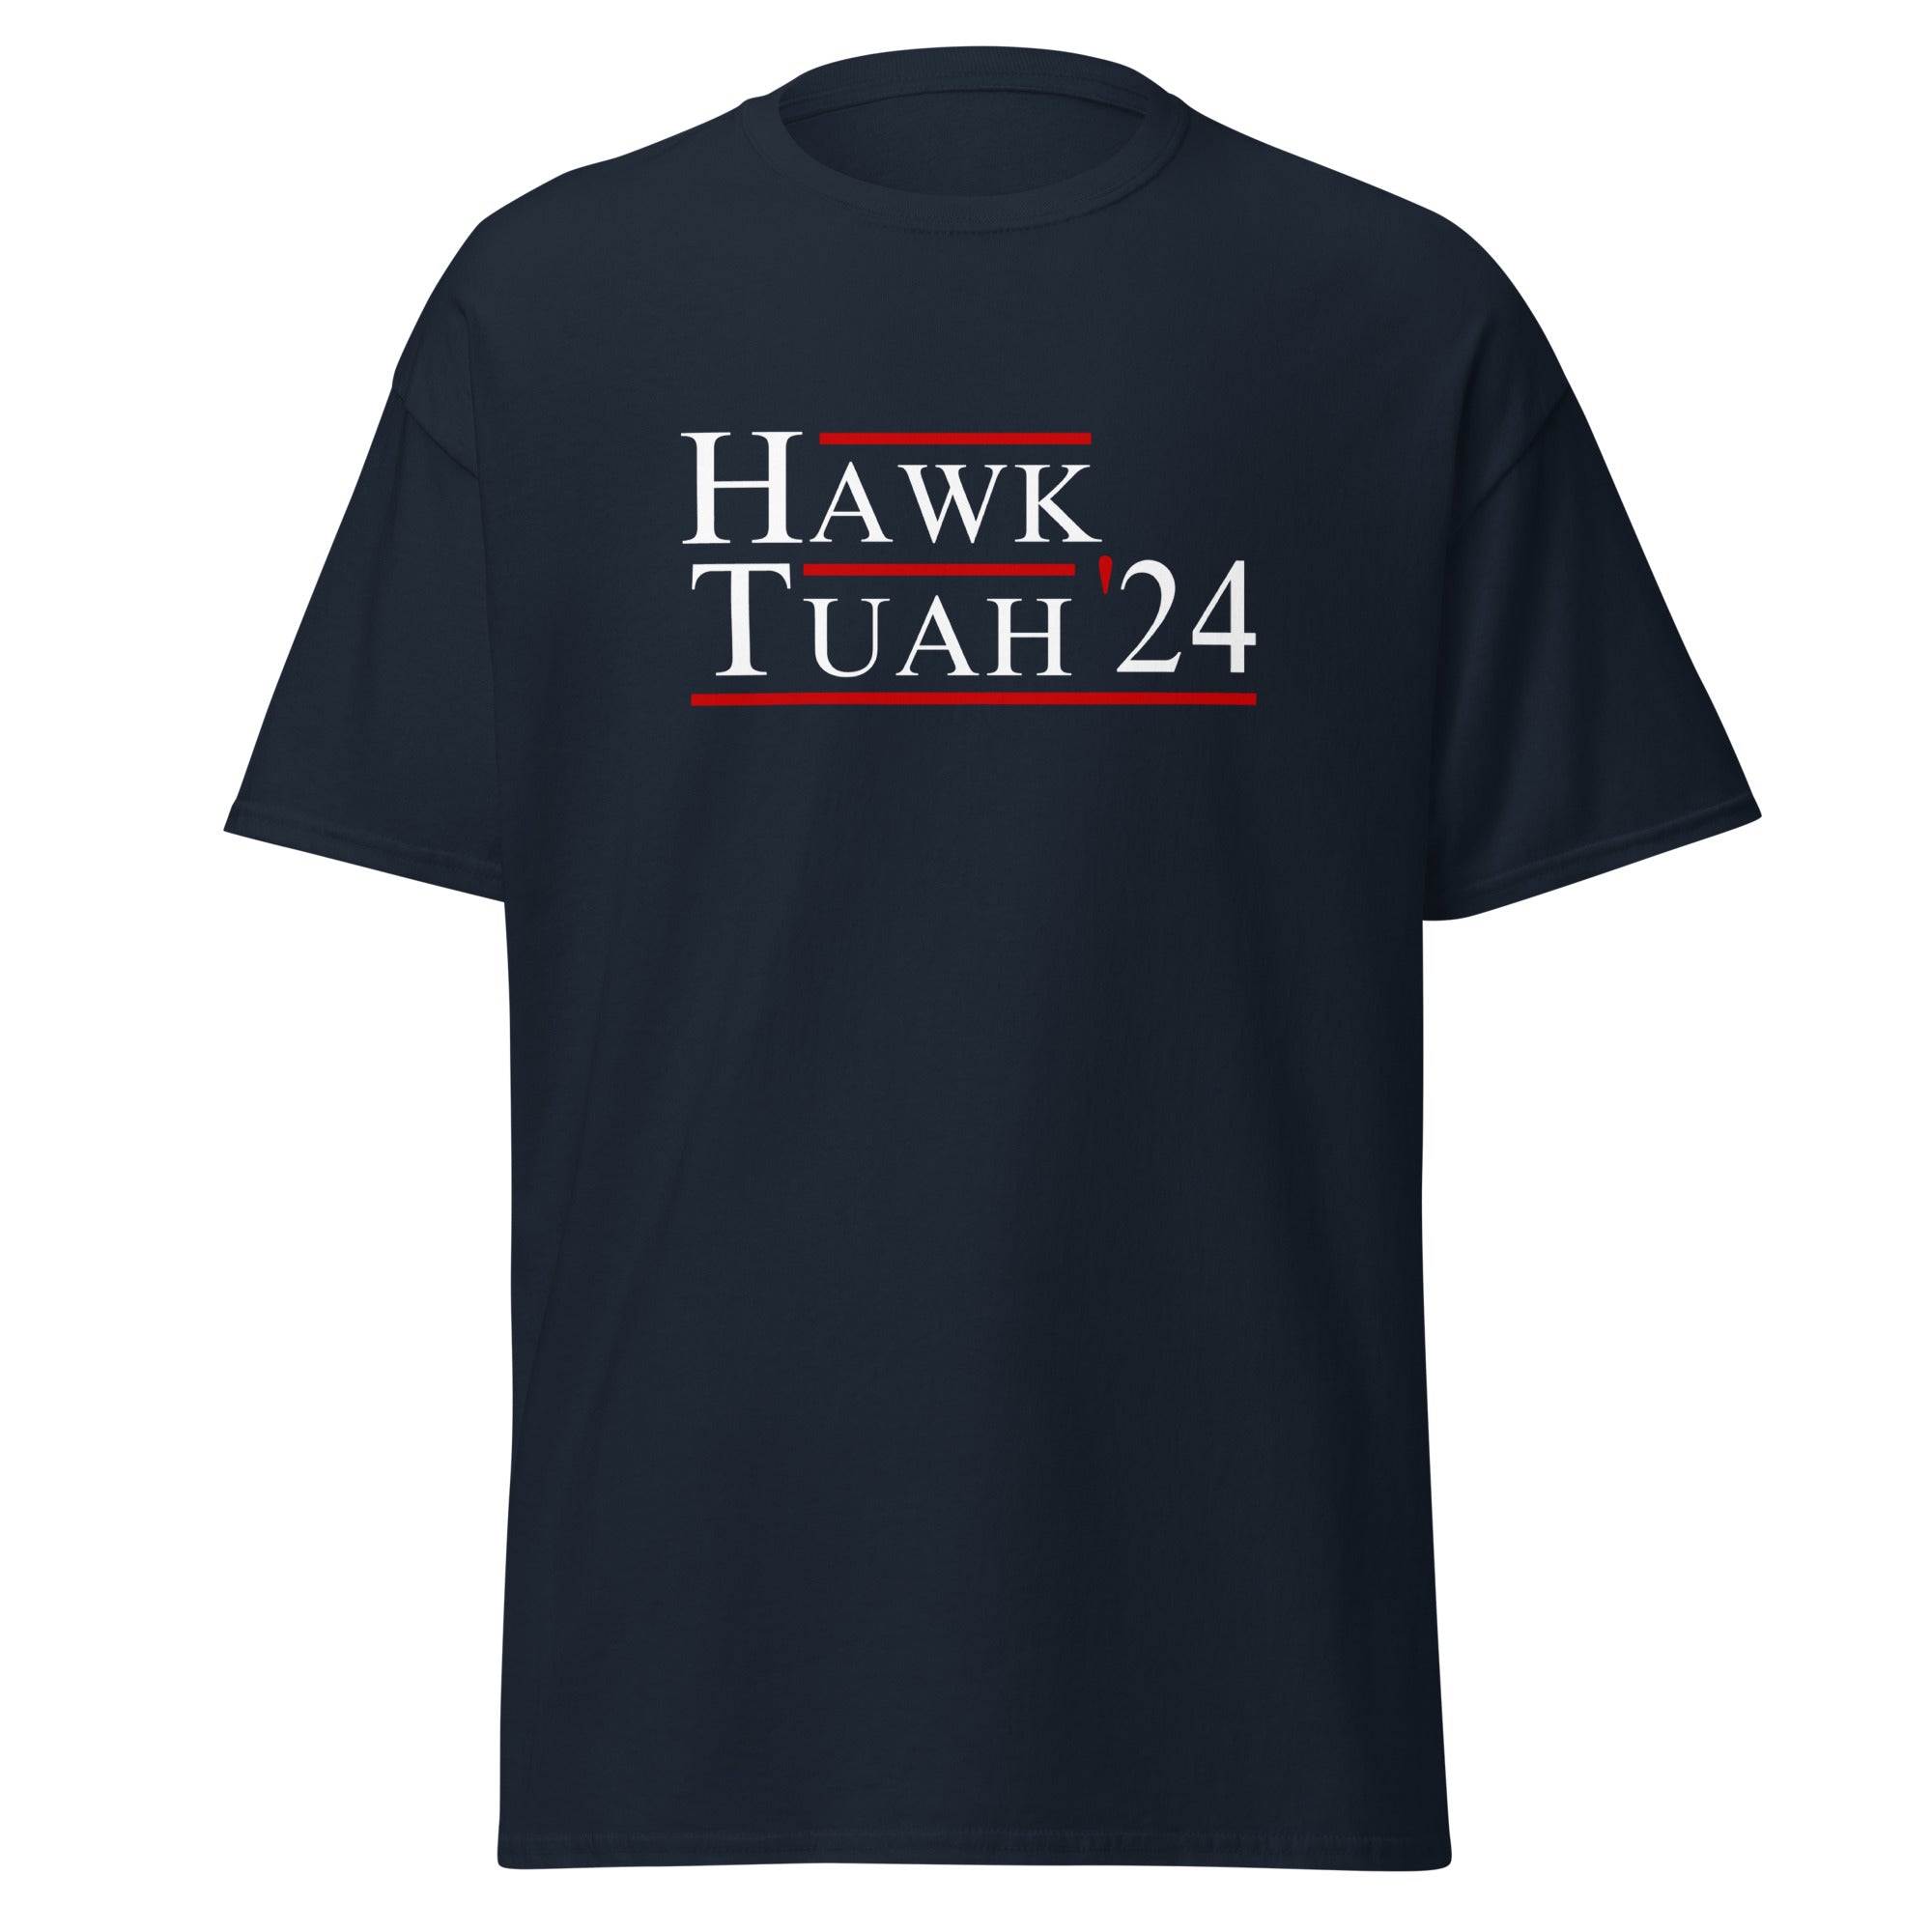 Hawk Tuah Shirt